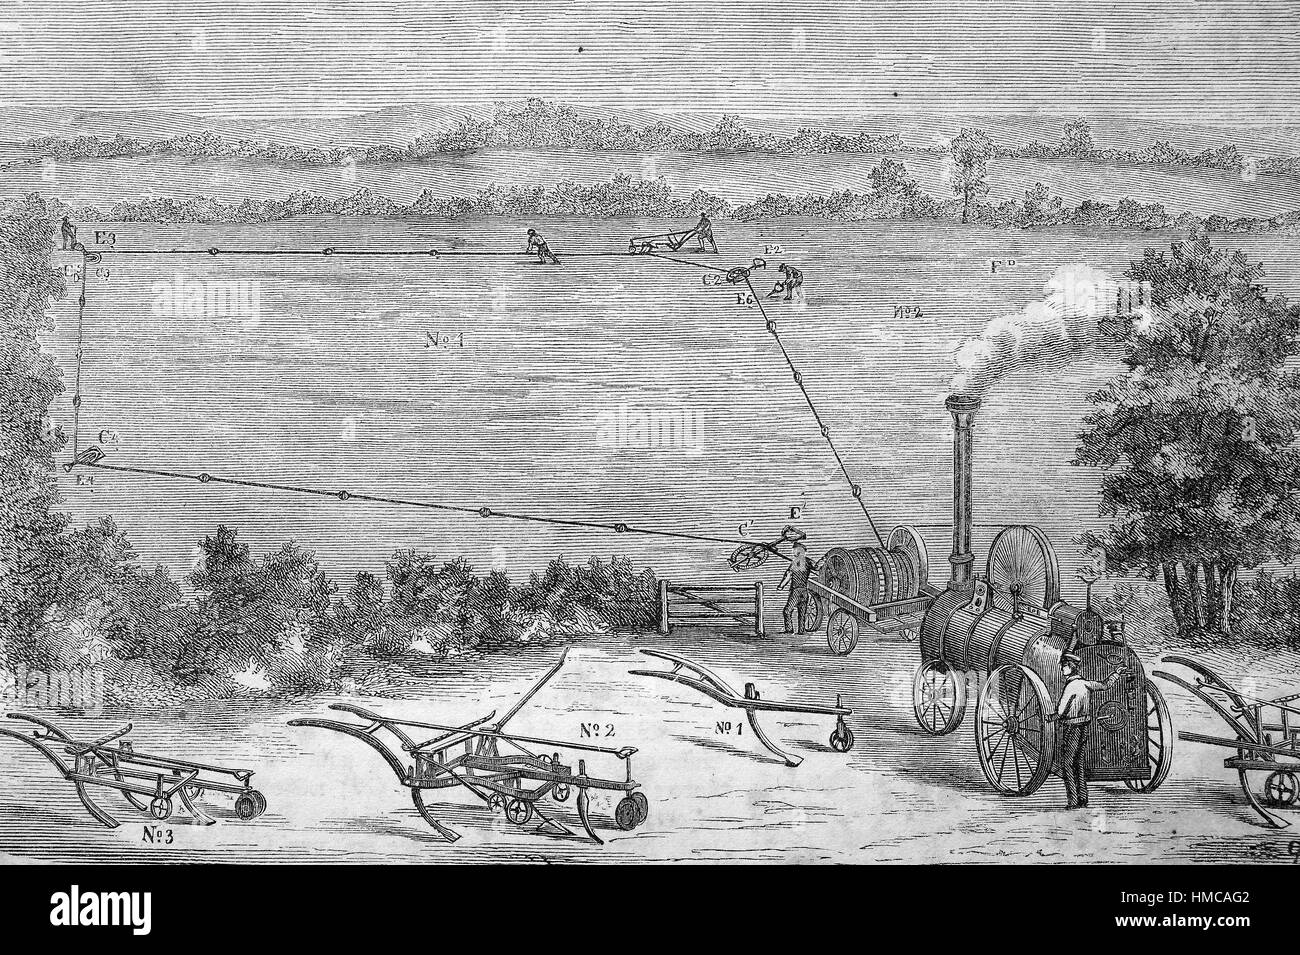 Ein Dampf-Pflug ist ein Dampfantrieb Pflug. Es wurde Mitte des 19. Jahrhunderts erfunden und war ein erster Schritt in die Mechanisierung der Bodenbearbeitung in der Landwirtschaft, Foto oder Bild, veröffentlicht 1892, digital verbessert Stockfoto